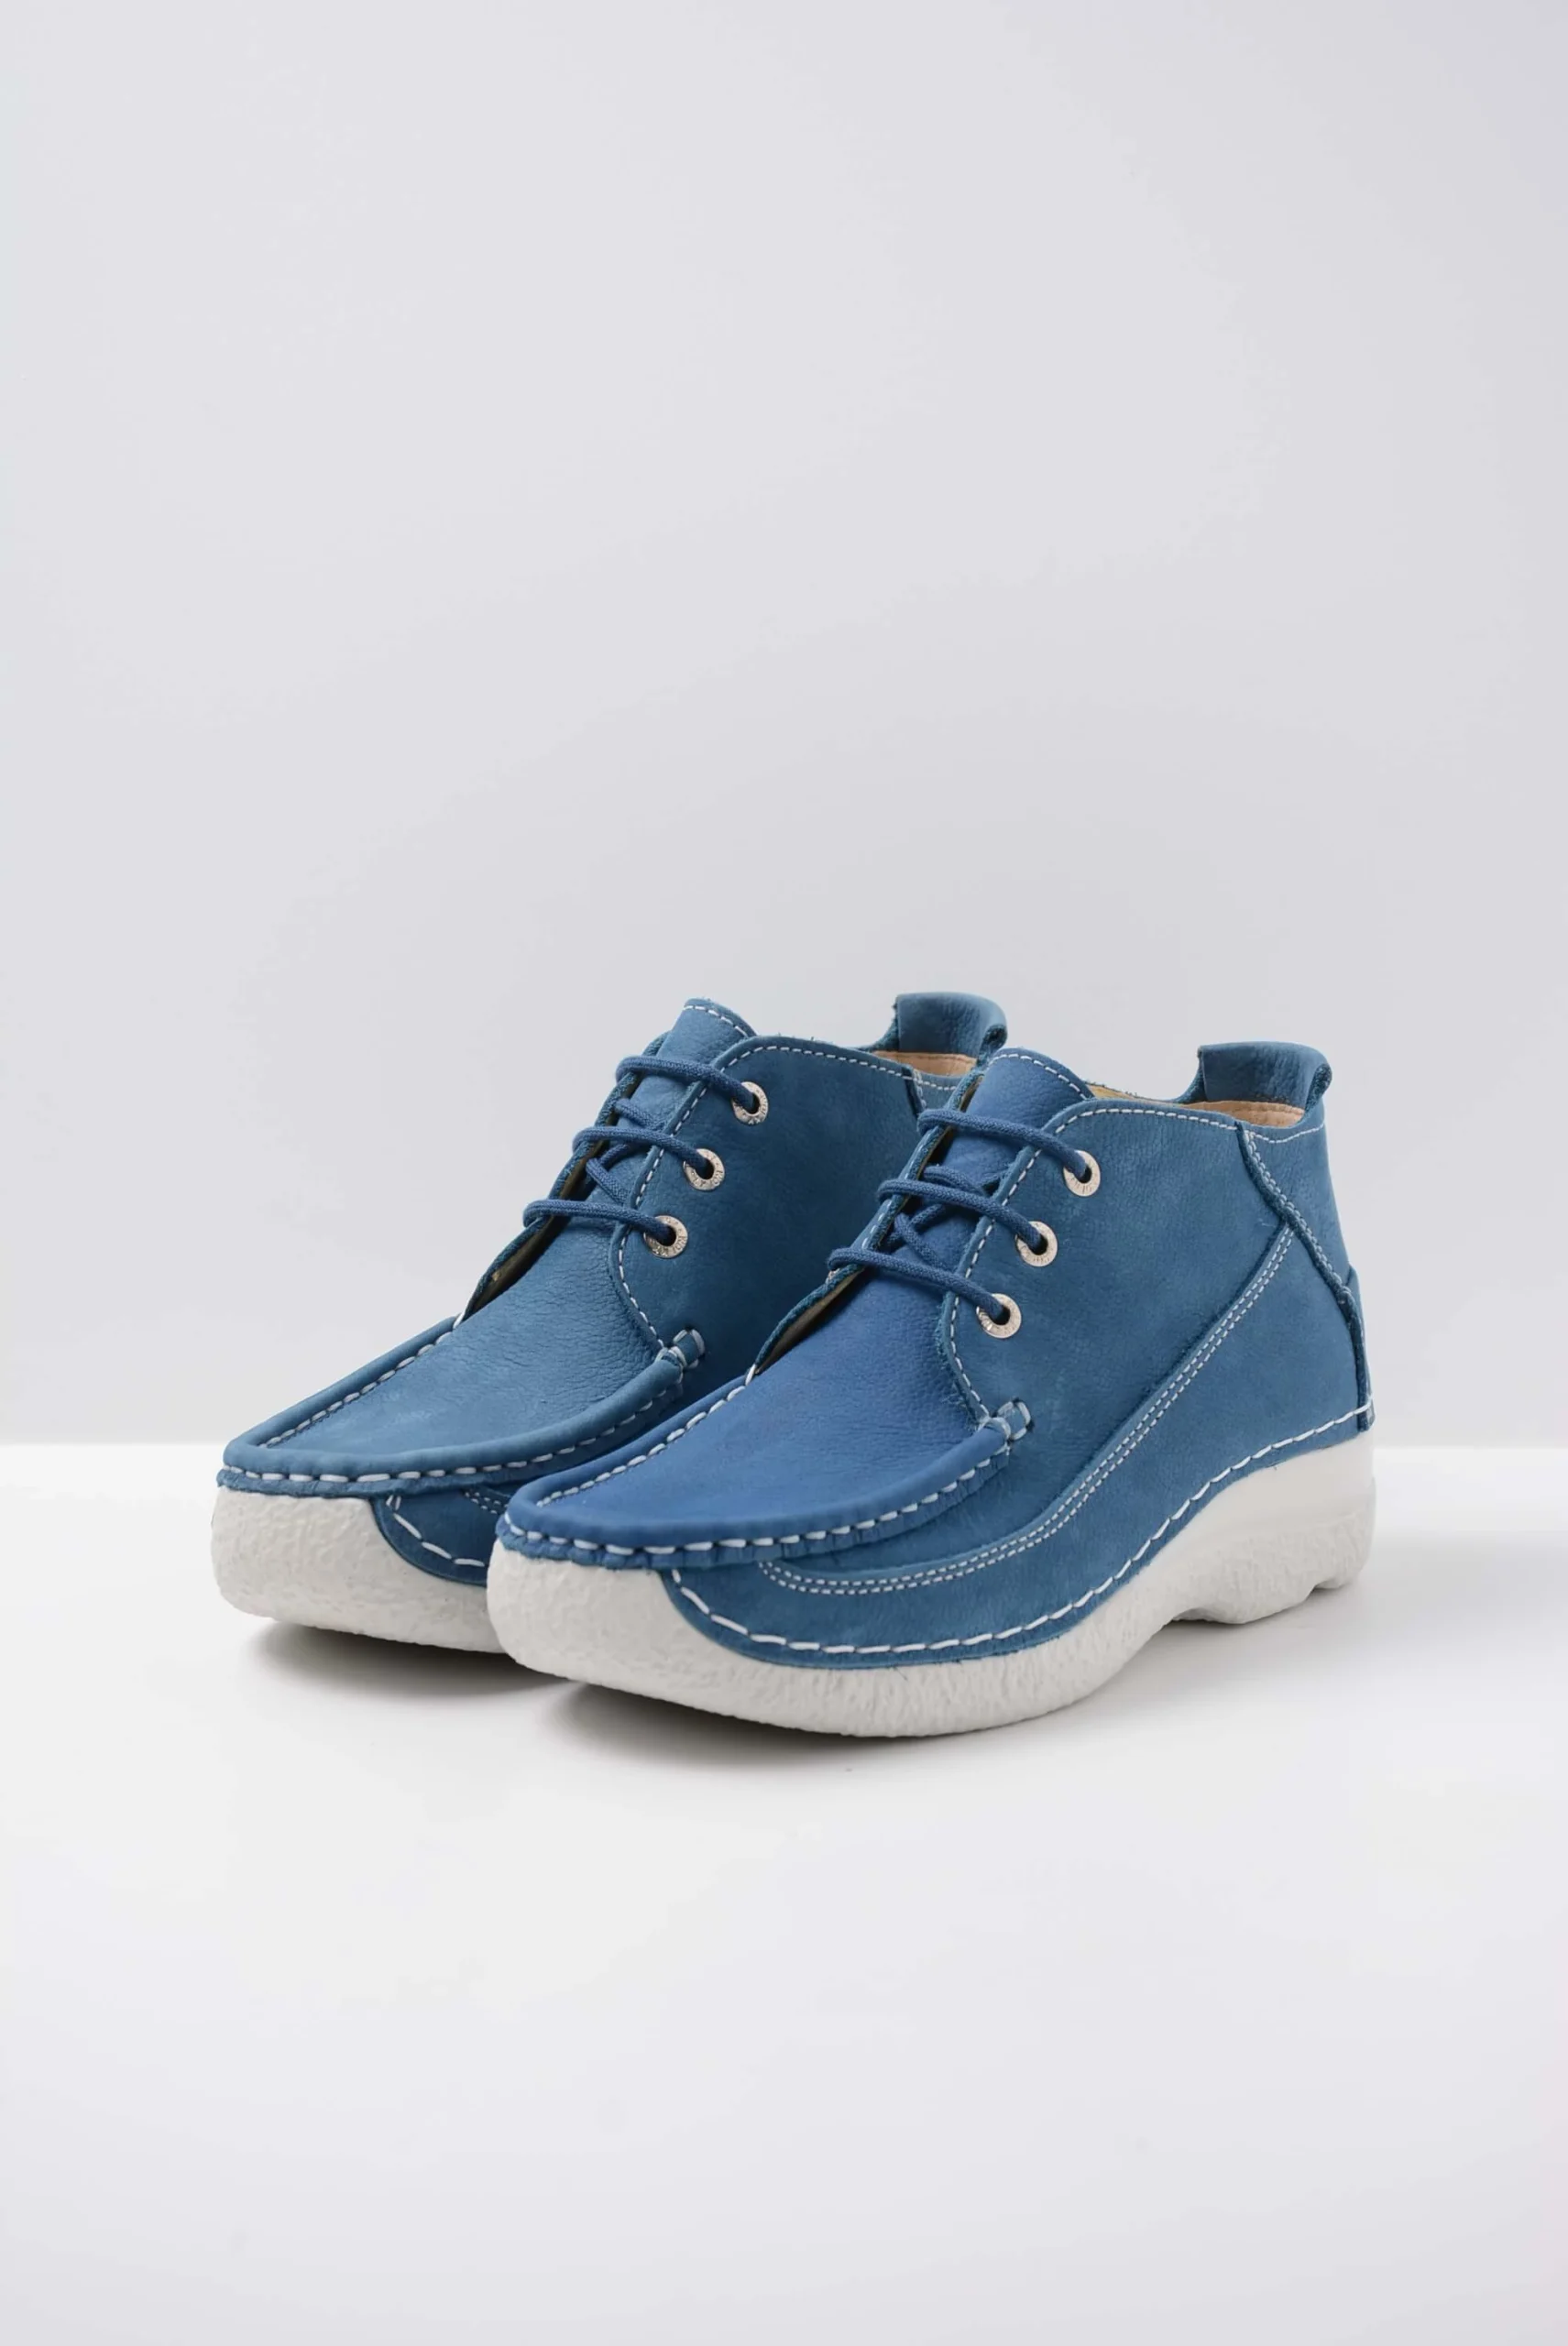 Defecte Of later samen Koop jouw Wolky Roll Moc - atlantisch blauw nubuck schoenen online